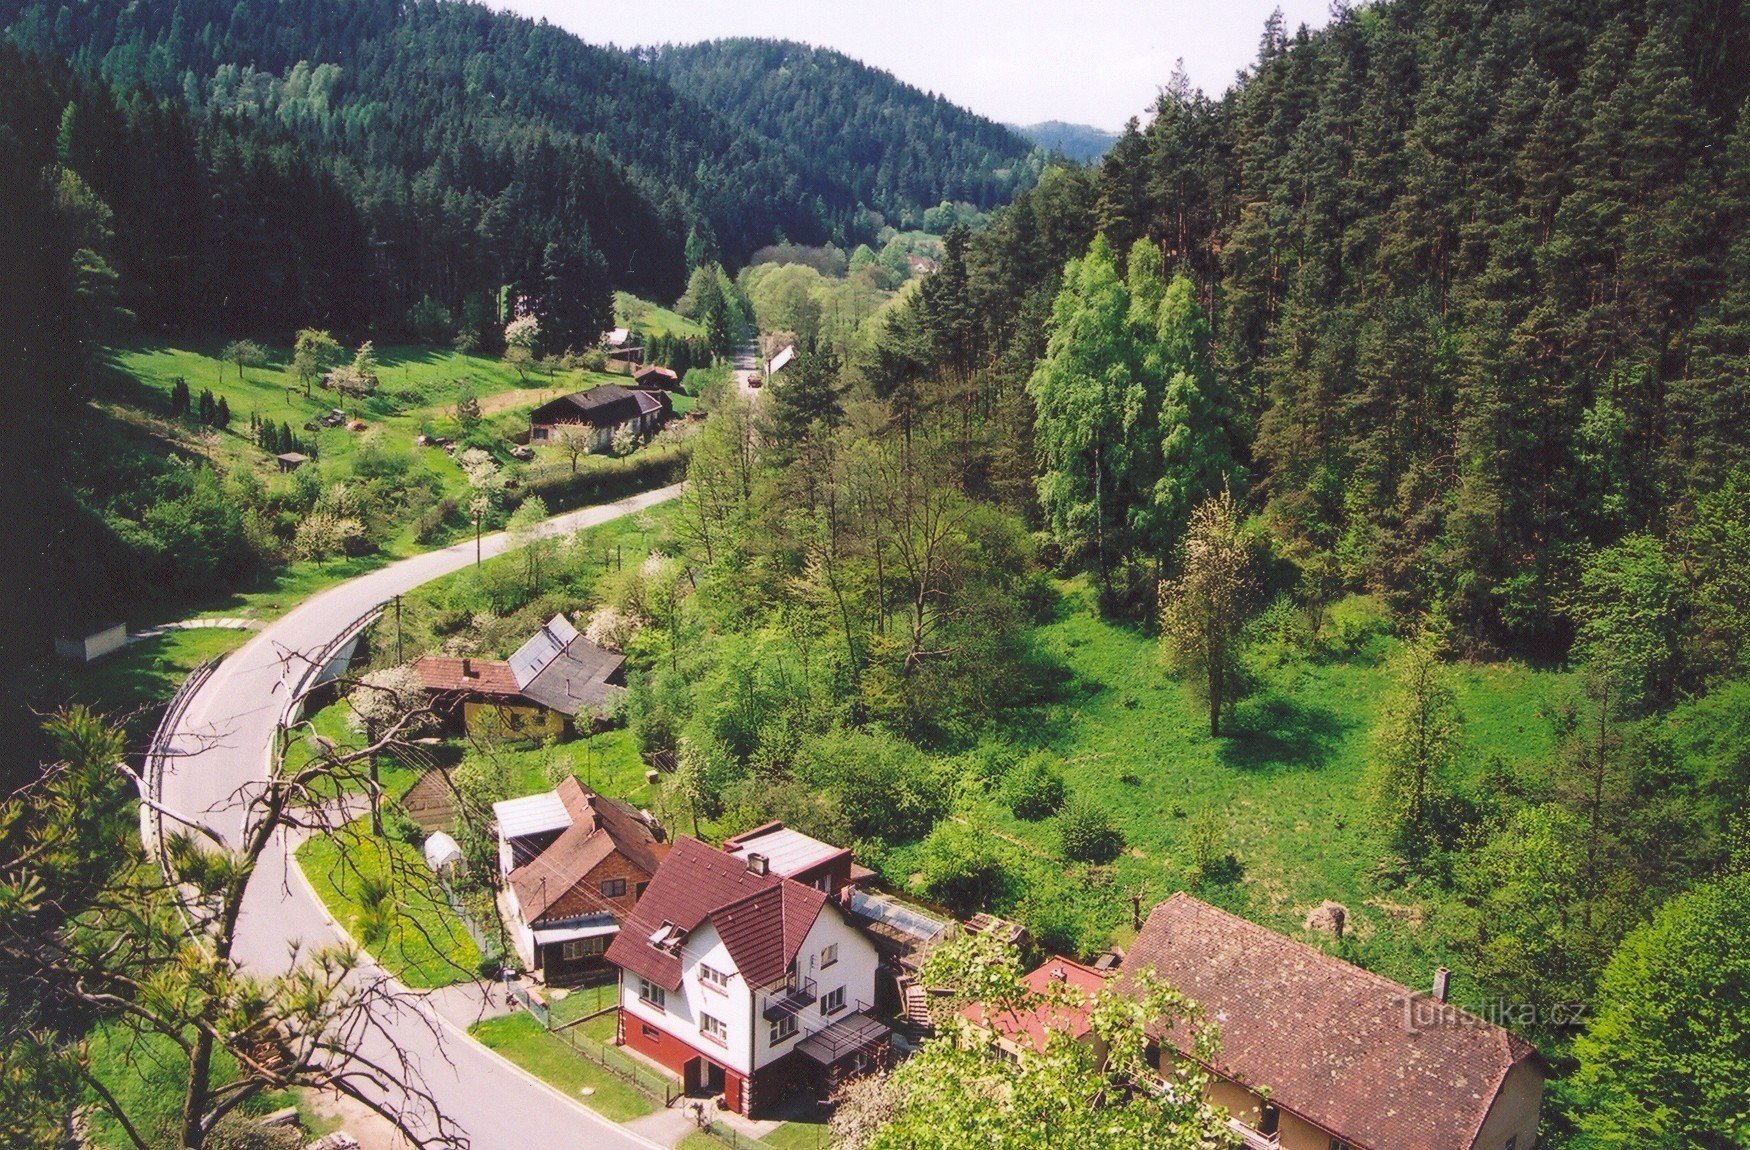 Nhìn từ góc nhìn của thung lũng Křetínka